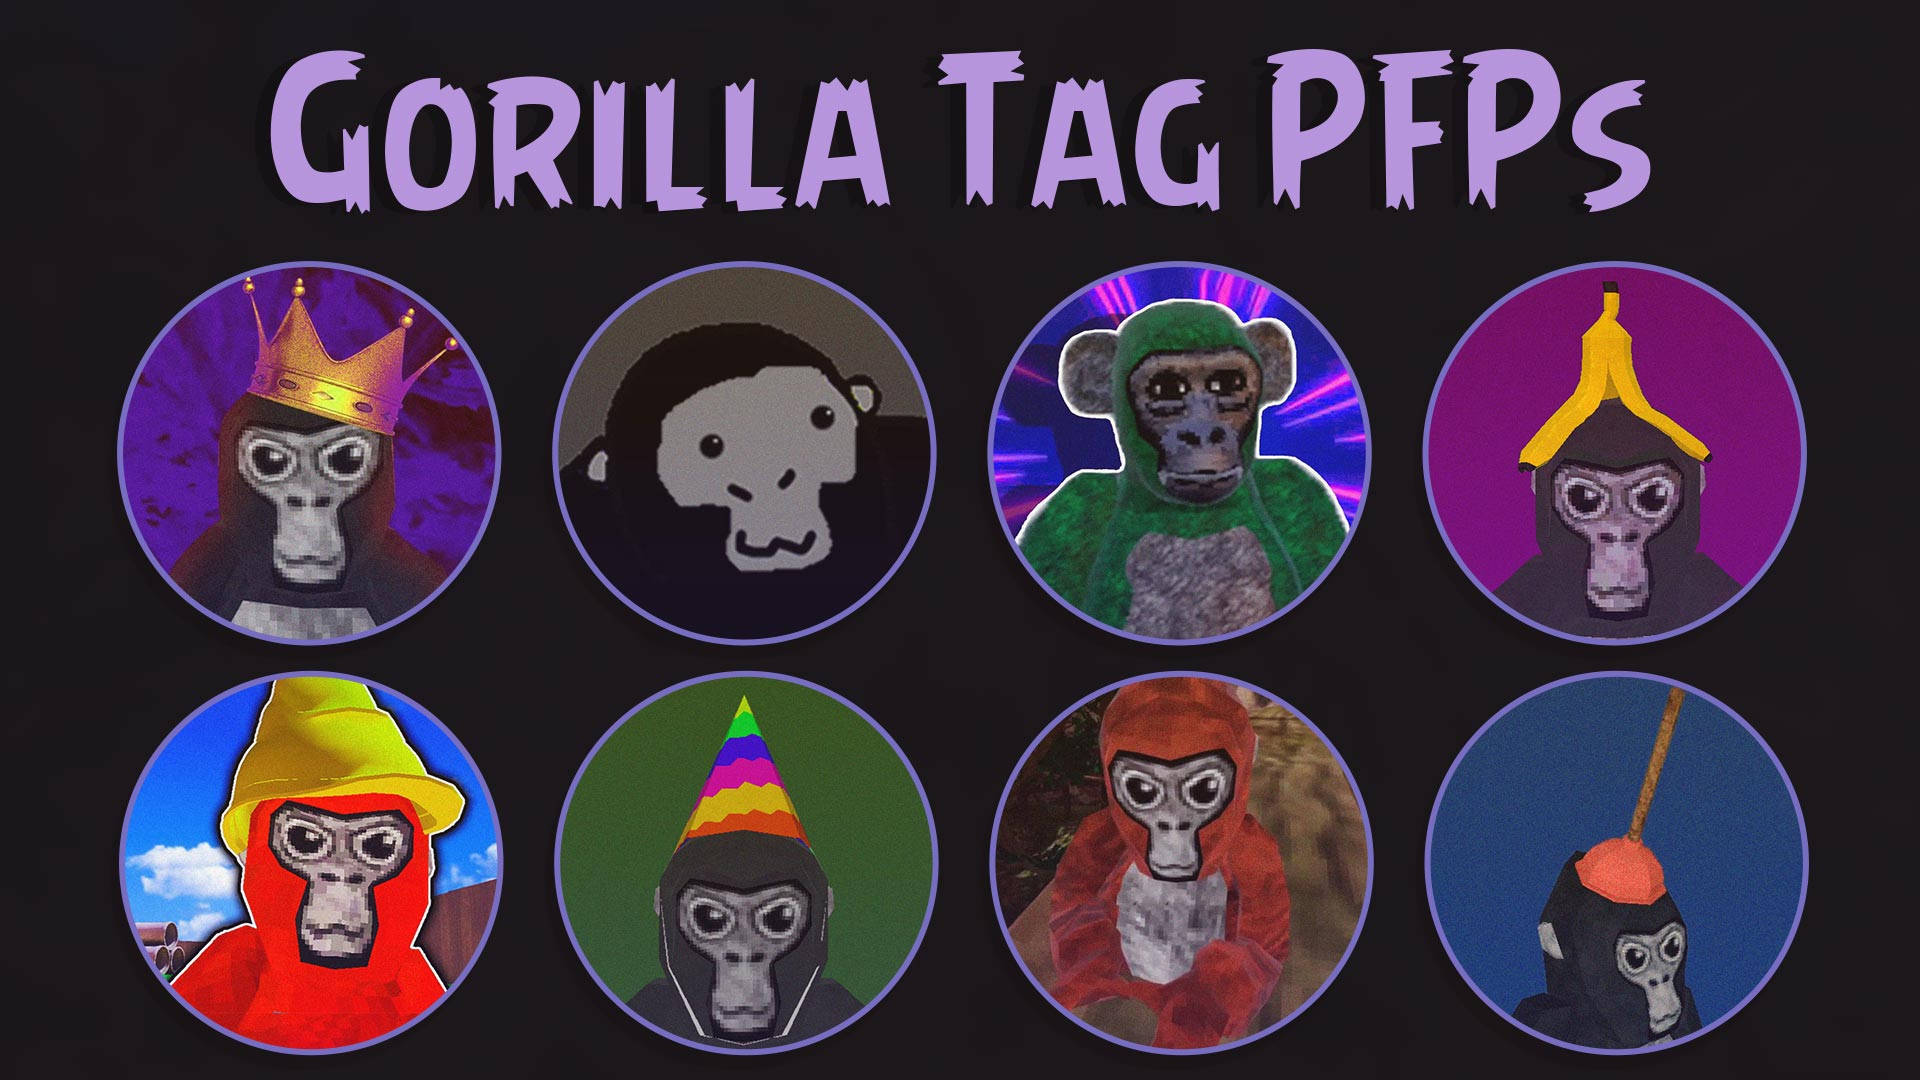 Gorilla Tag Pfp Wallpaper